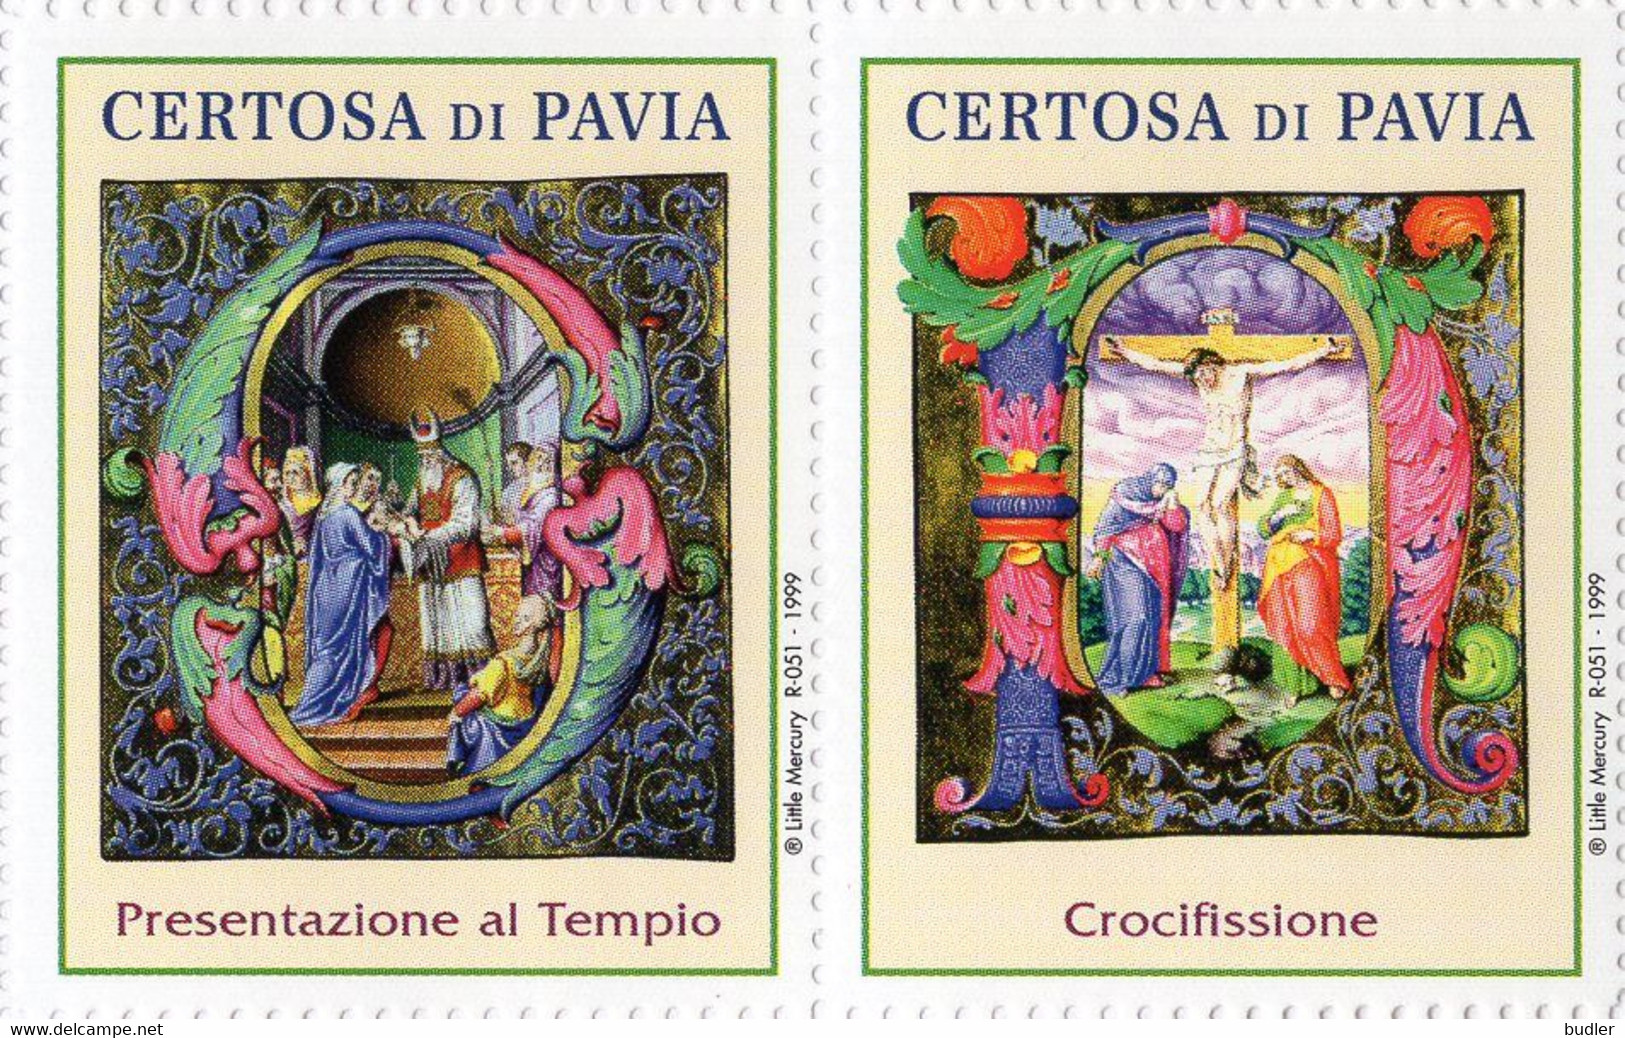 ITALIA : Sheet Of 6 Vignettes : @§* Certosa Di PAVIA *§@  ## Capilettera Miniati Da Corali Della Certosa Di Pavia – ... - Grabados